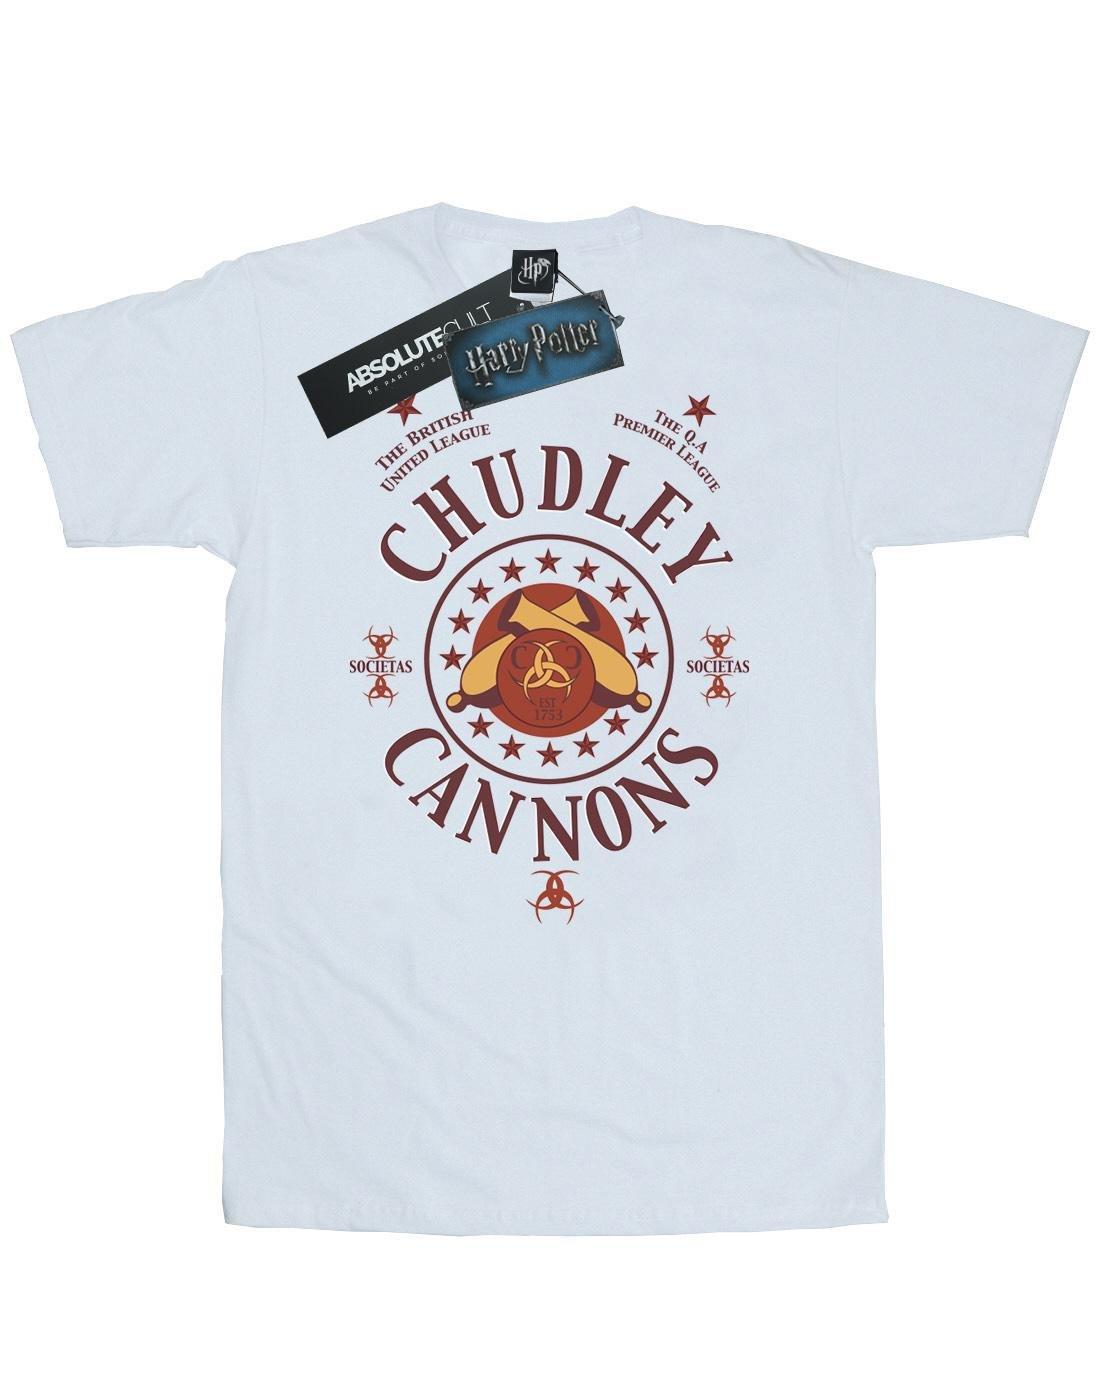 Chudley Cannons Logo Tshirt Herren Weiss S von Harry Potter